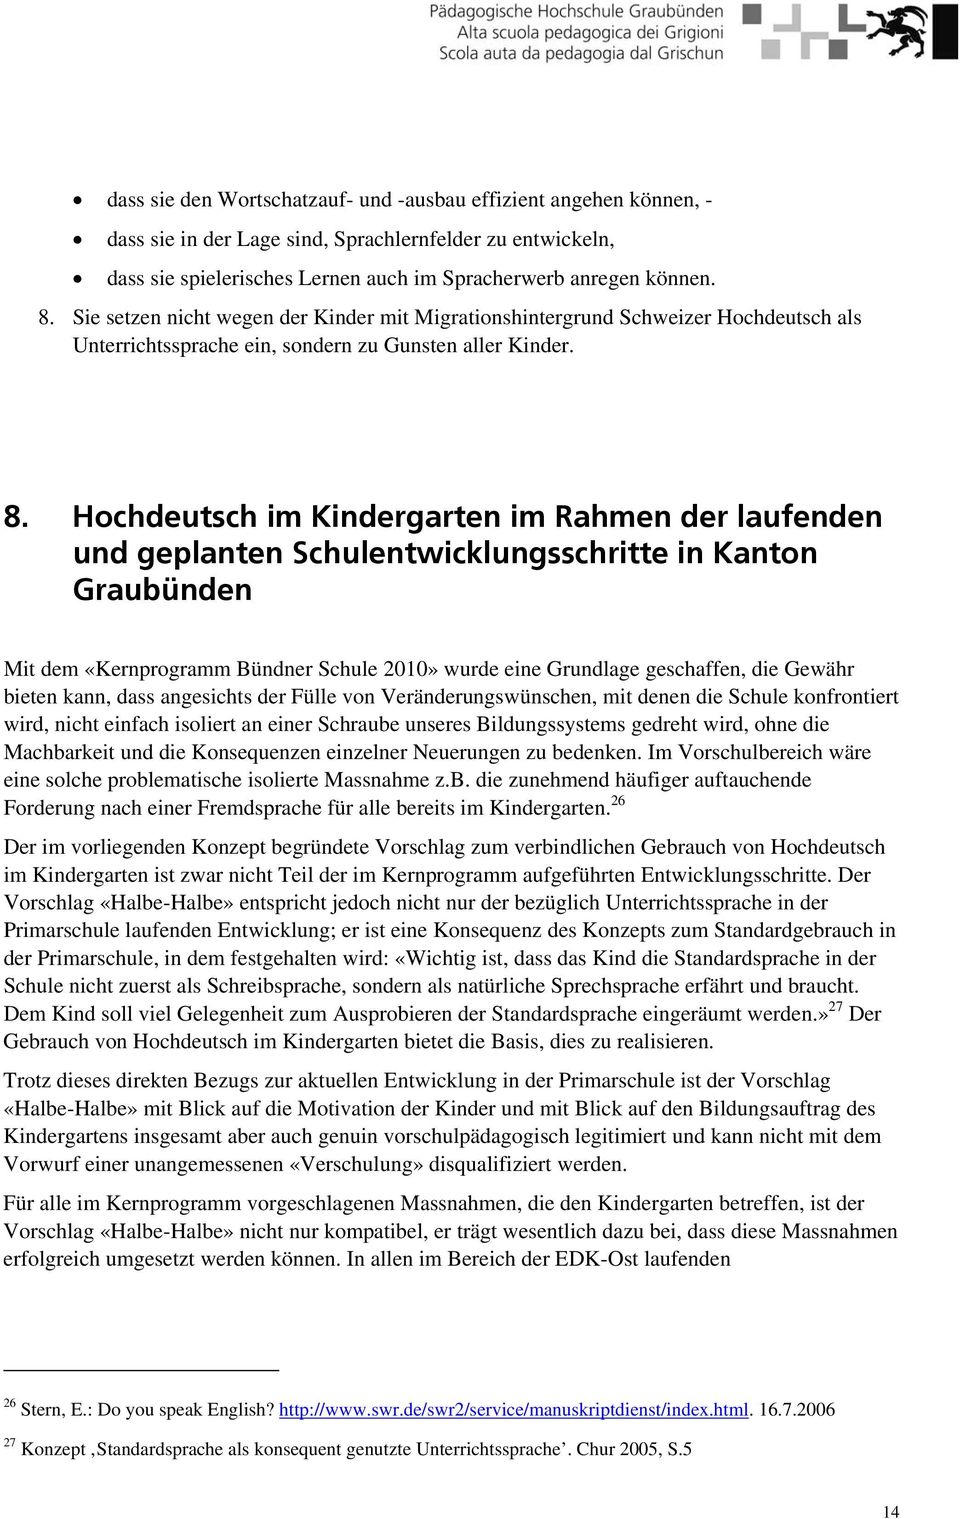 Hochdeutsch im Kindergarten im Rahmen der laufenden und geplanten Schulentwicklungsschritte in Kanton Graubünden Mit dem «Kernprogramm Bündner Schule 2010» wurde eine Grundlage geschaffen, die Gewähr